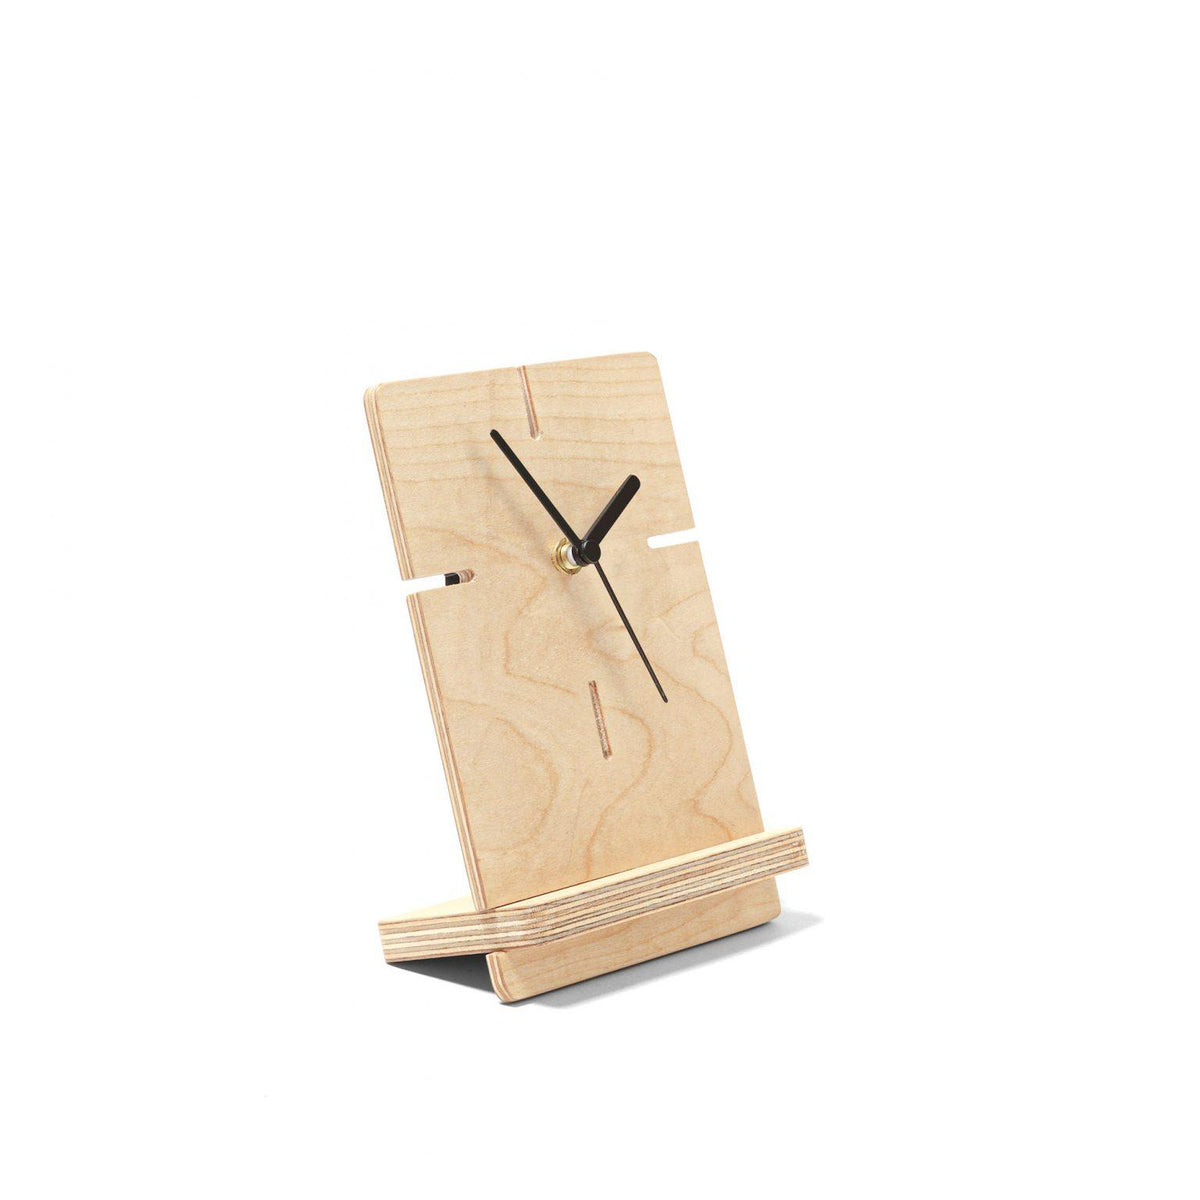 Tokei – Table Clock